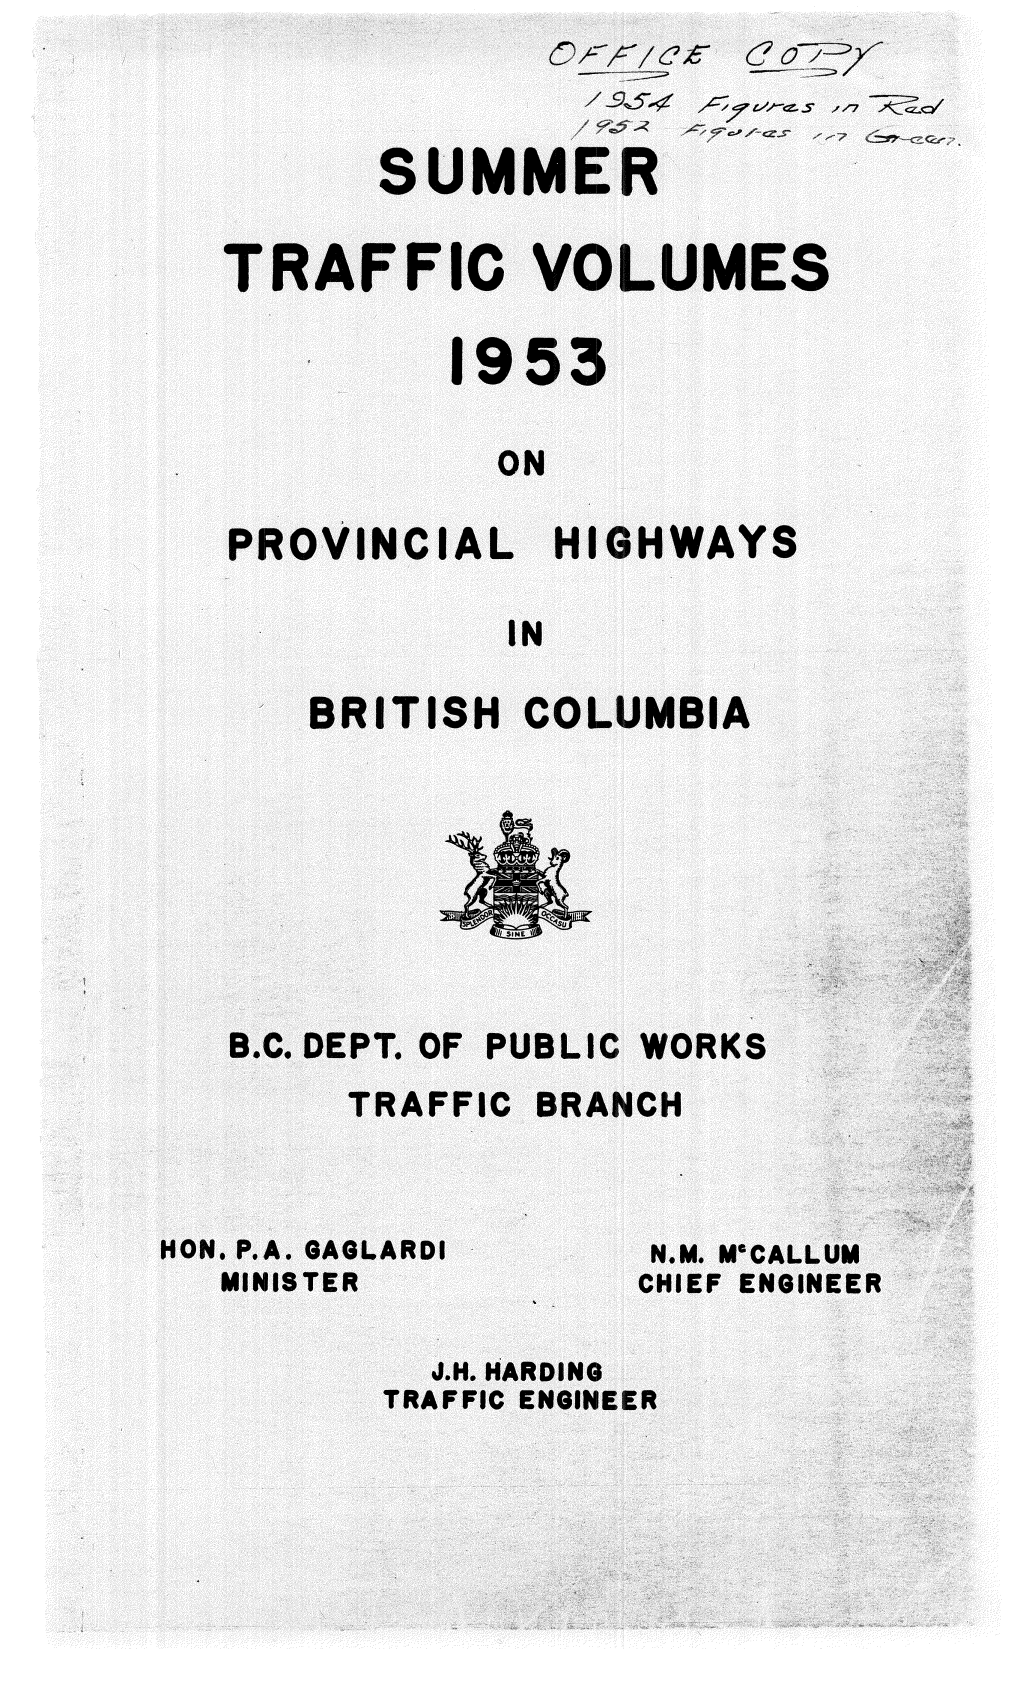 1953 Summer Traffic Volumes